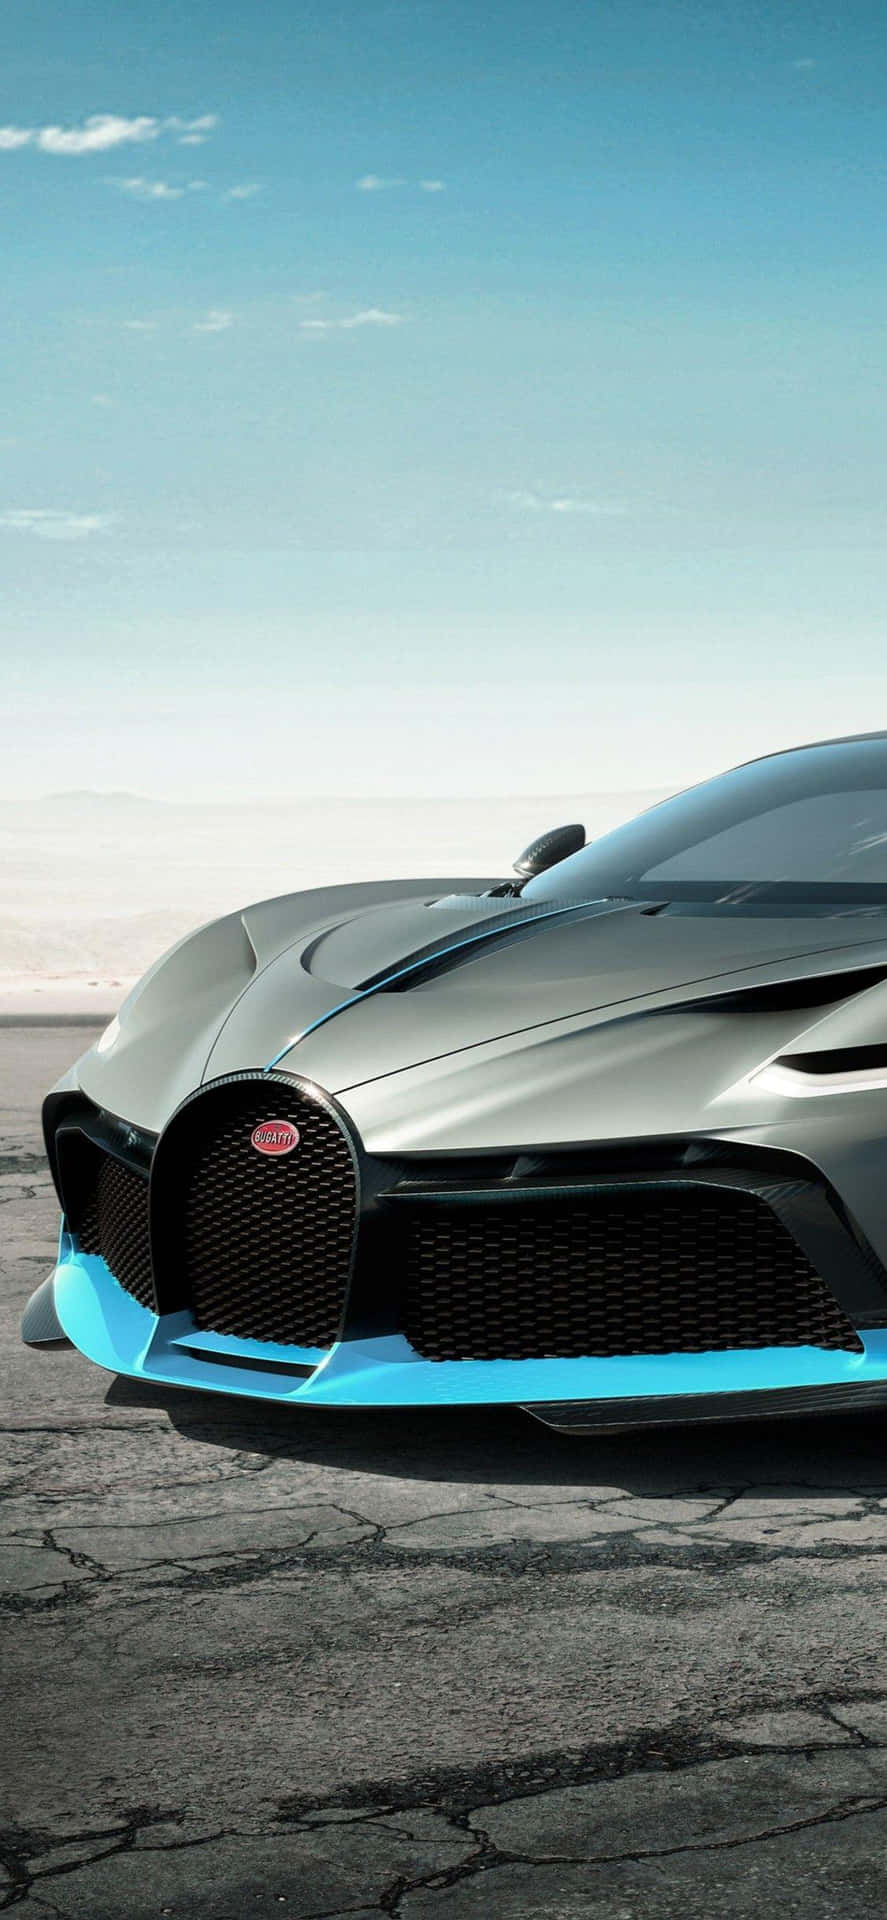 Fondode Pantalla Para Iphone Xs Max: Proyecto Cars 2, Color Gris Oscuro Con Bugatti Divo.